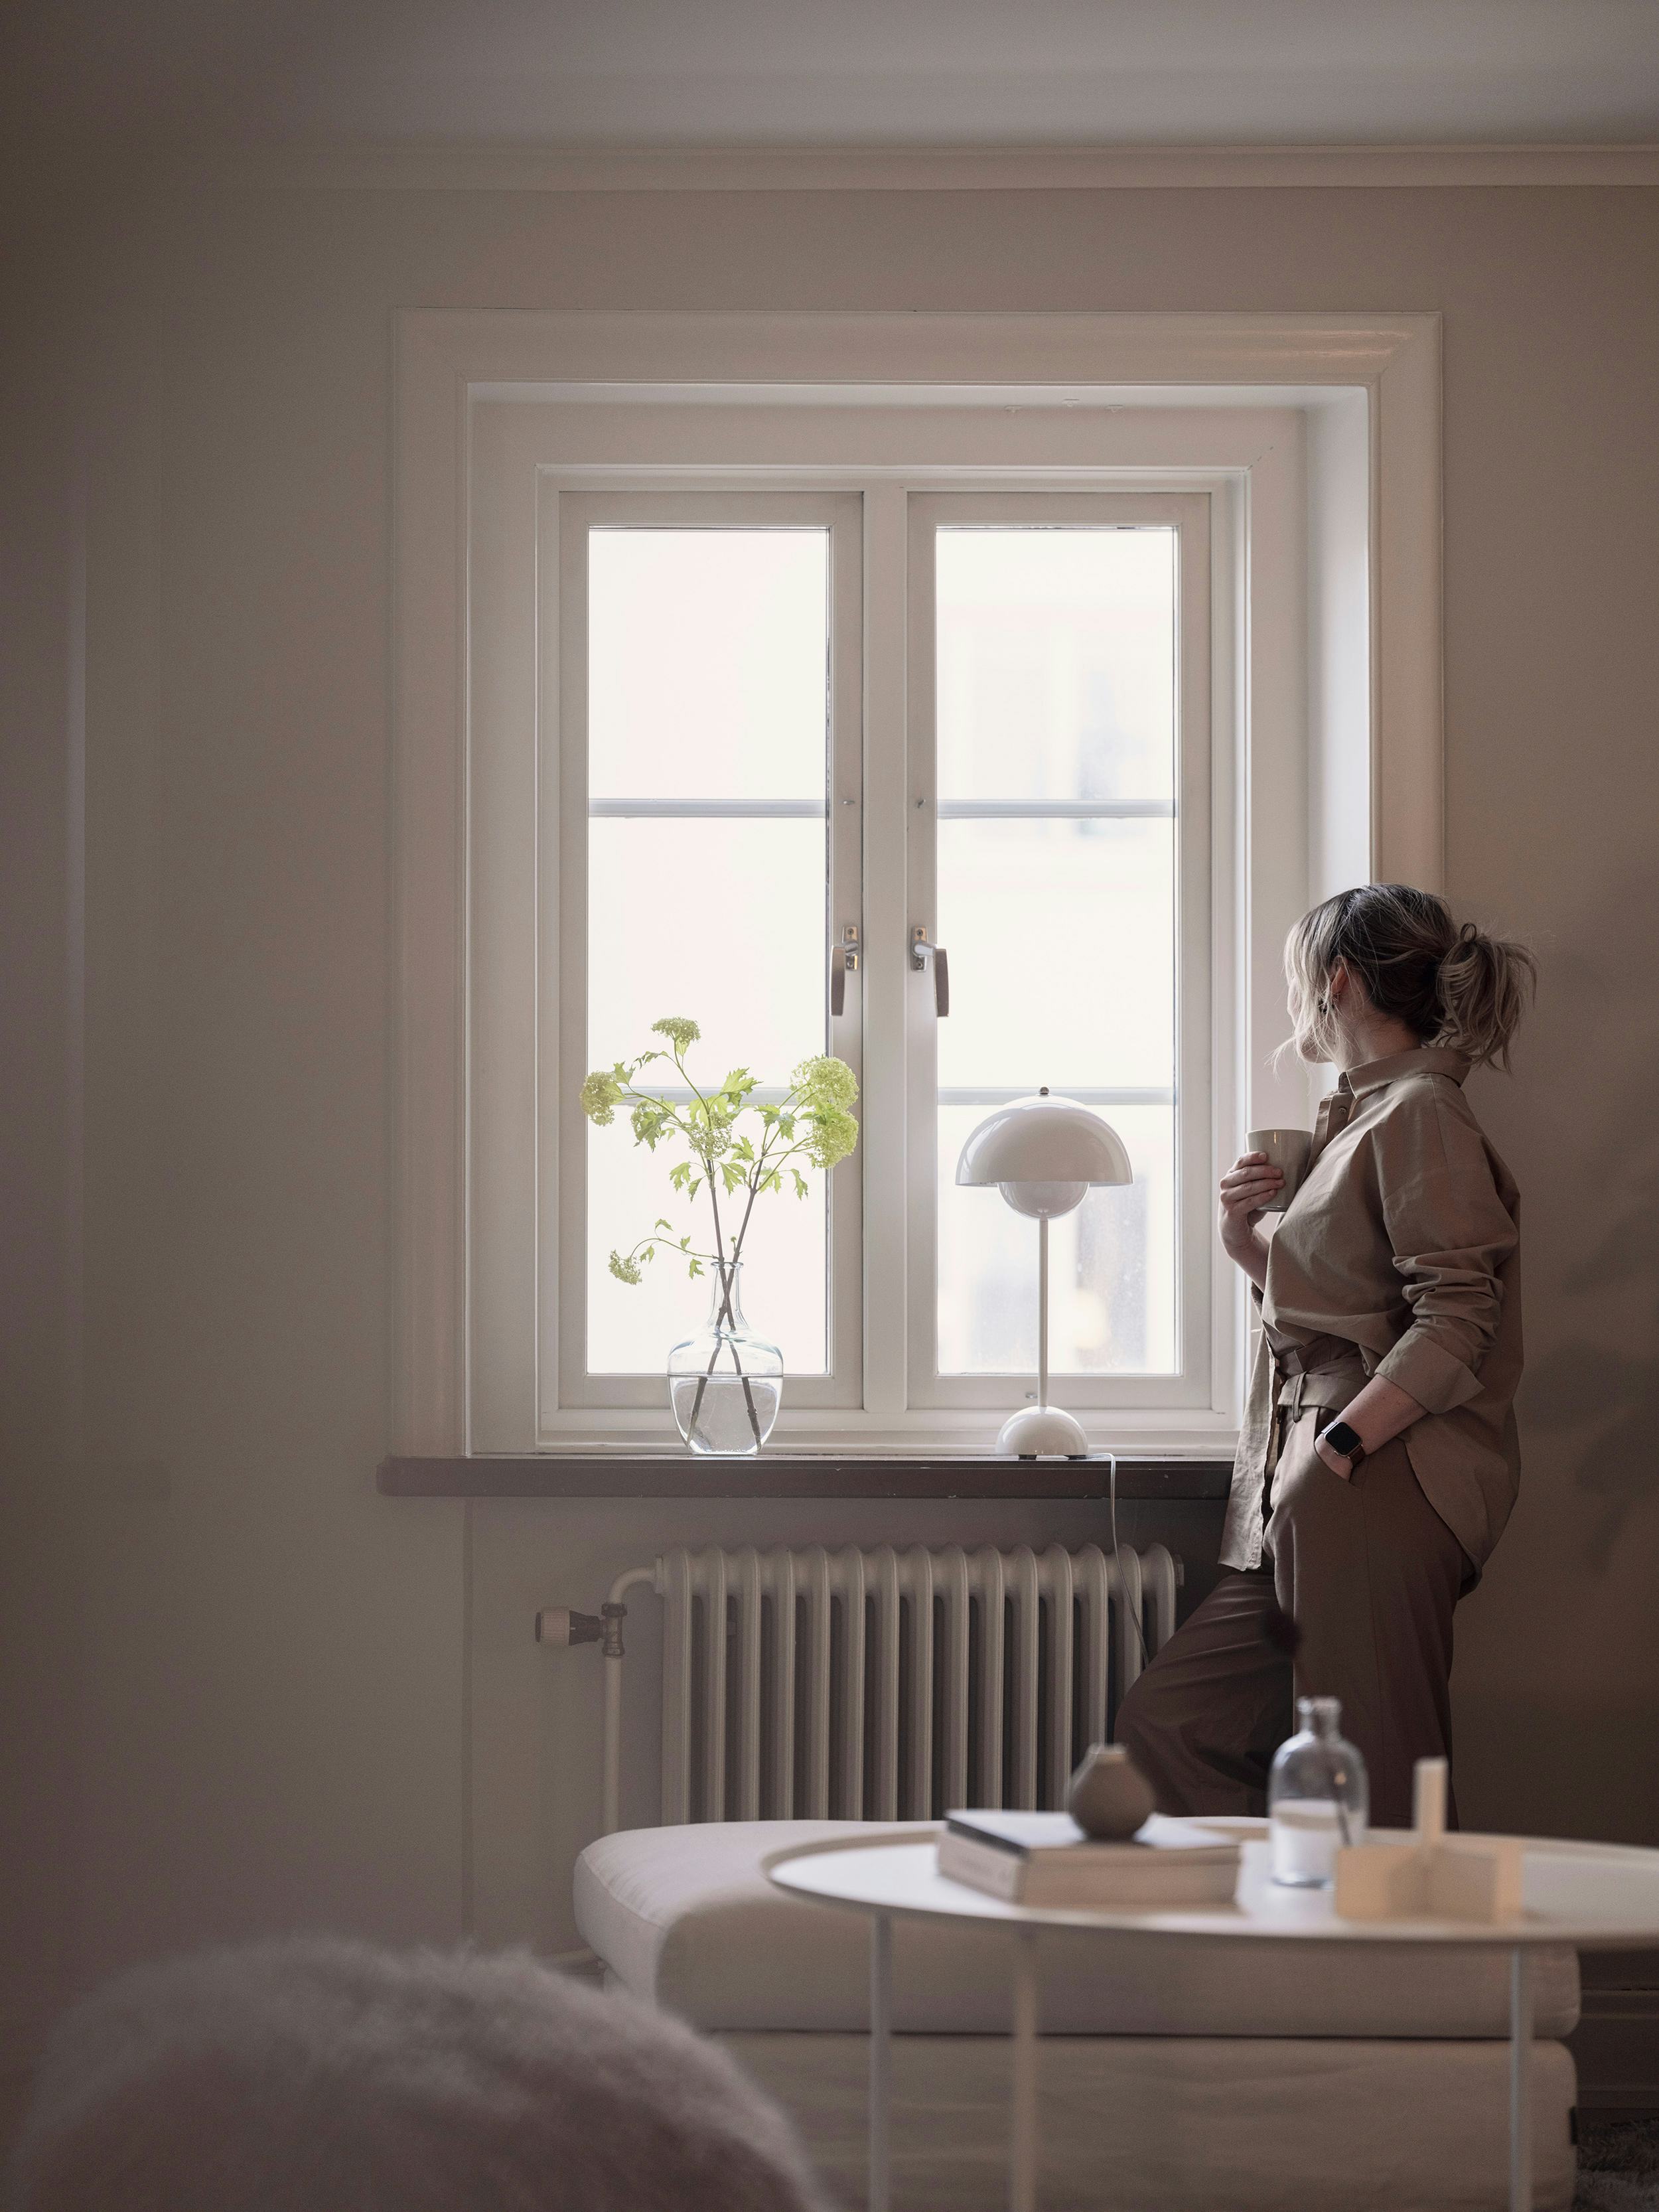 Kvinna tittar ut genom fönster - Acticon varumärkesbild av Saga Production